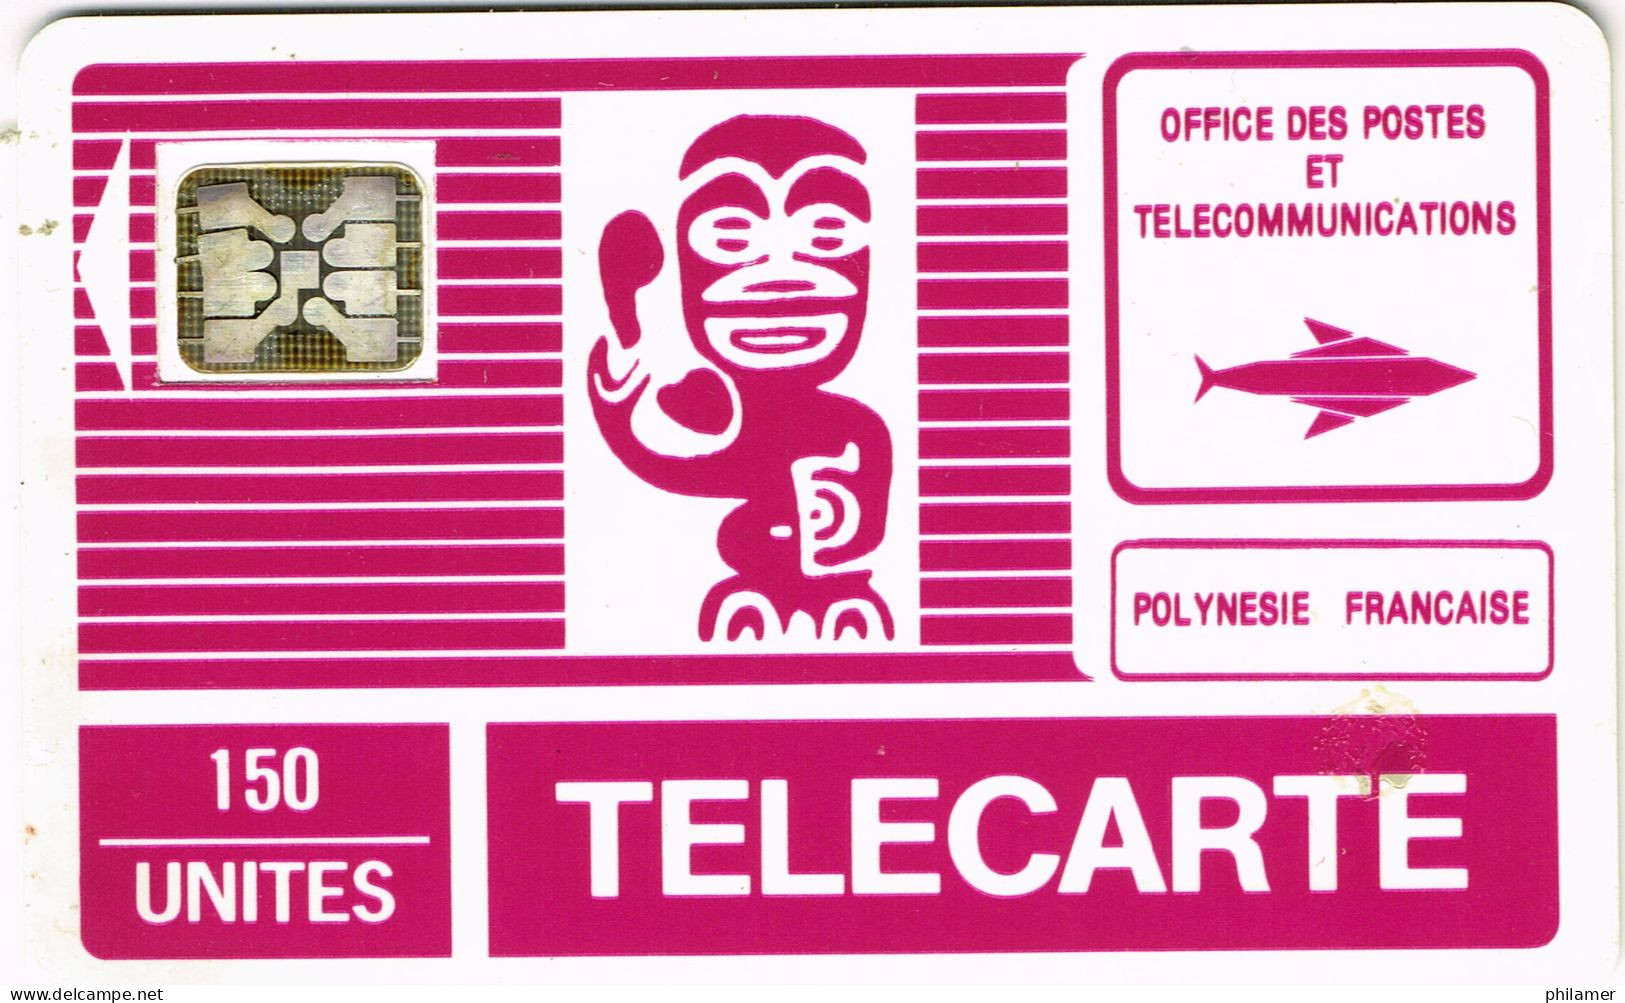 Polynesie Francaise French Polynesia Phonecard Telecarte PF2B Tiki Generique Telephone SC4 Trou 6 UT BE - New Caledonia